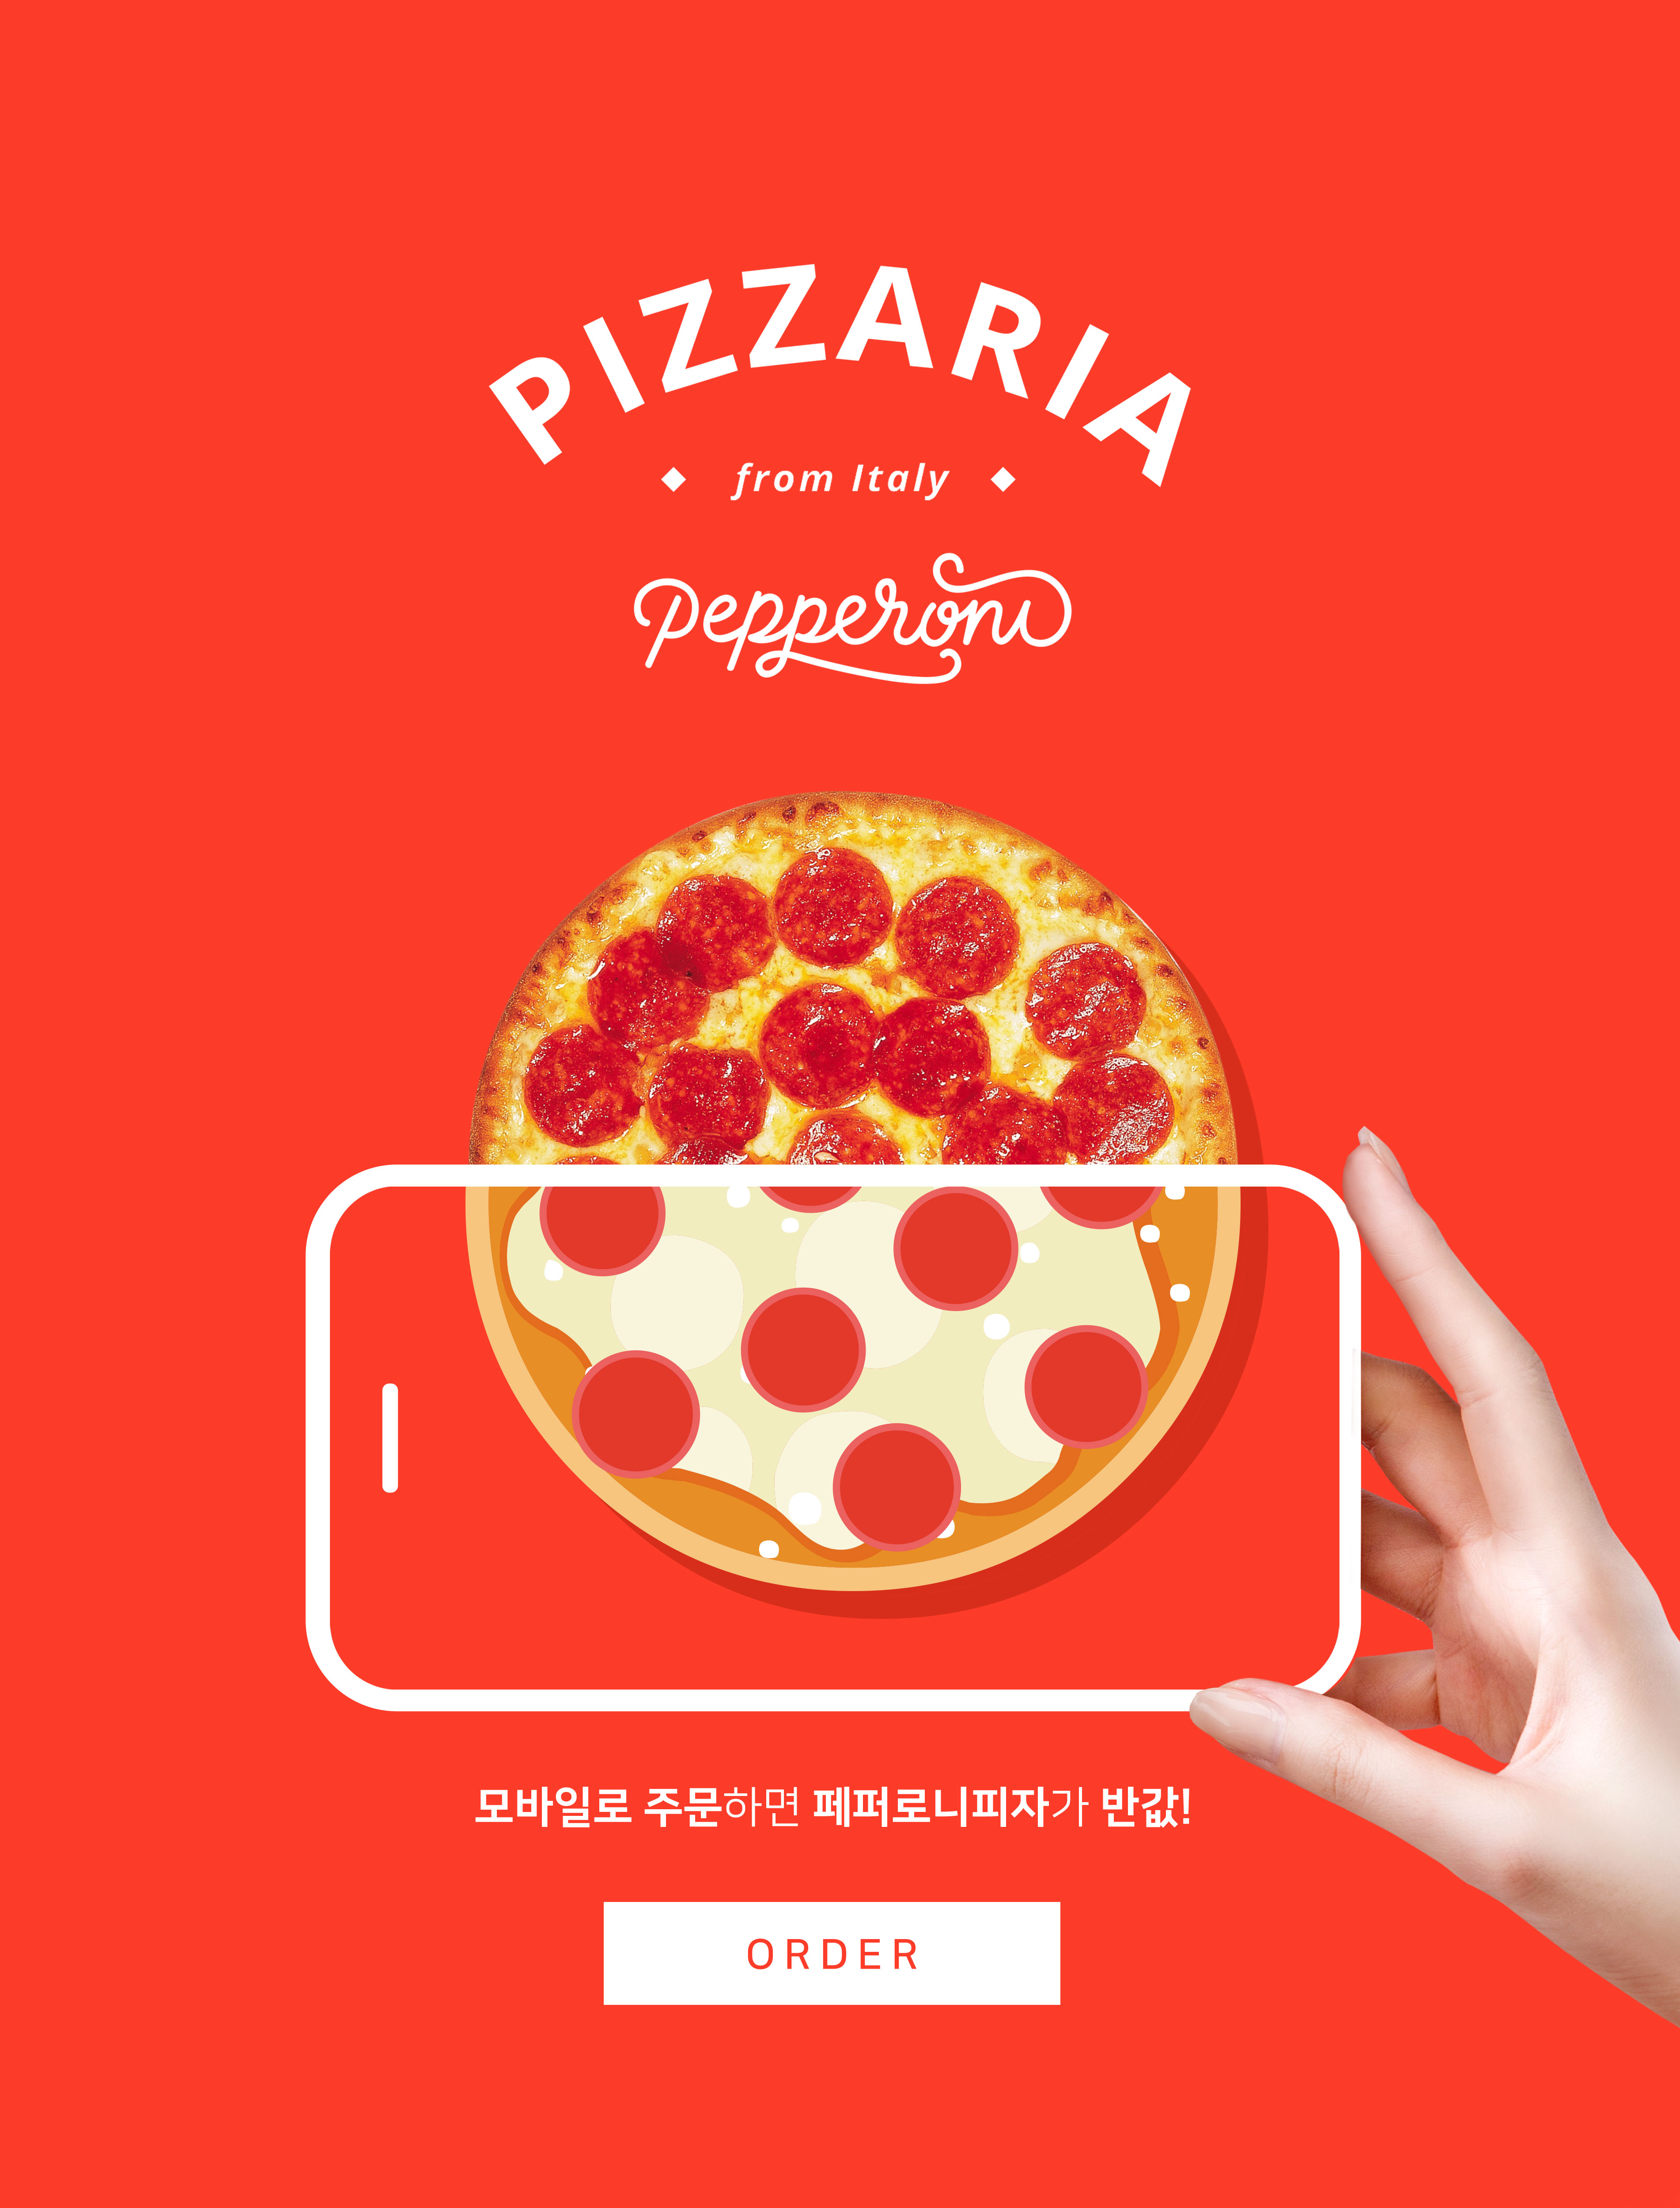 手机订购披萨半价活动宣传海报PSD素材16图库精选素材插图